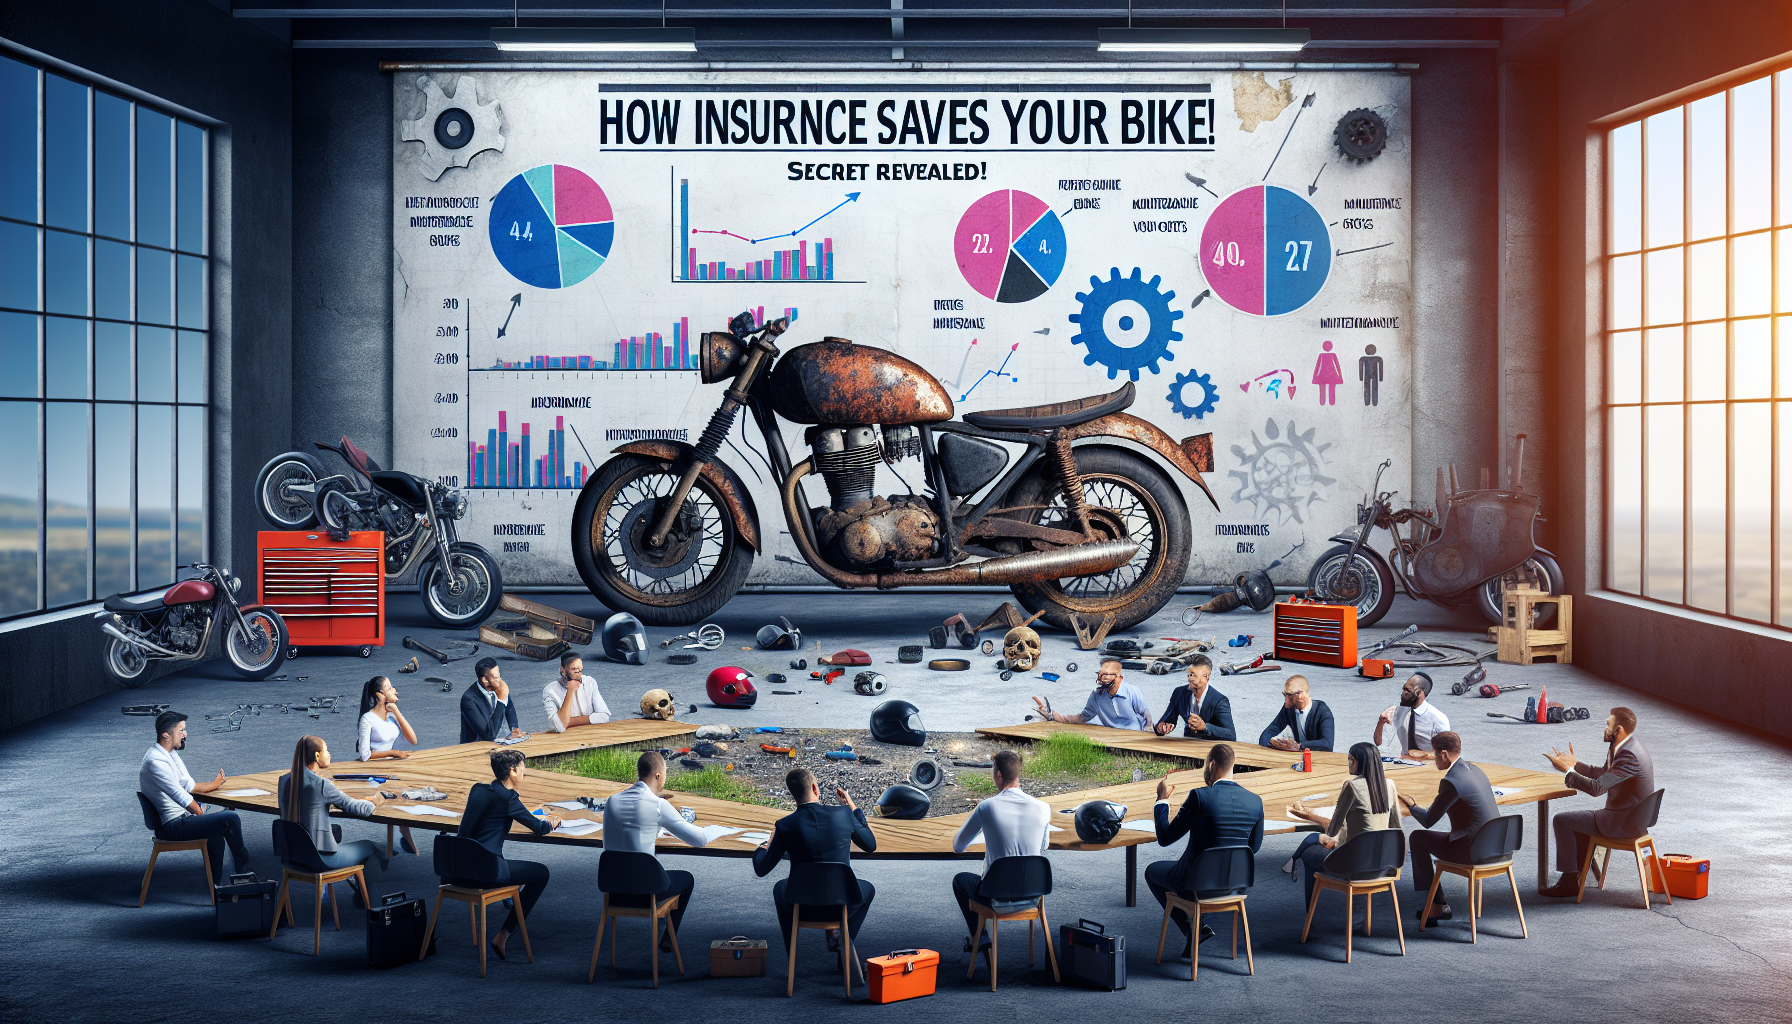 découvrez l'impact de l'assurance moto sur la révision à la réunion. informations pratiques et conseils pour les motards.